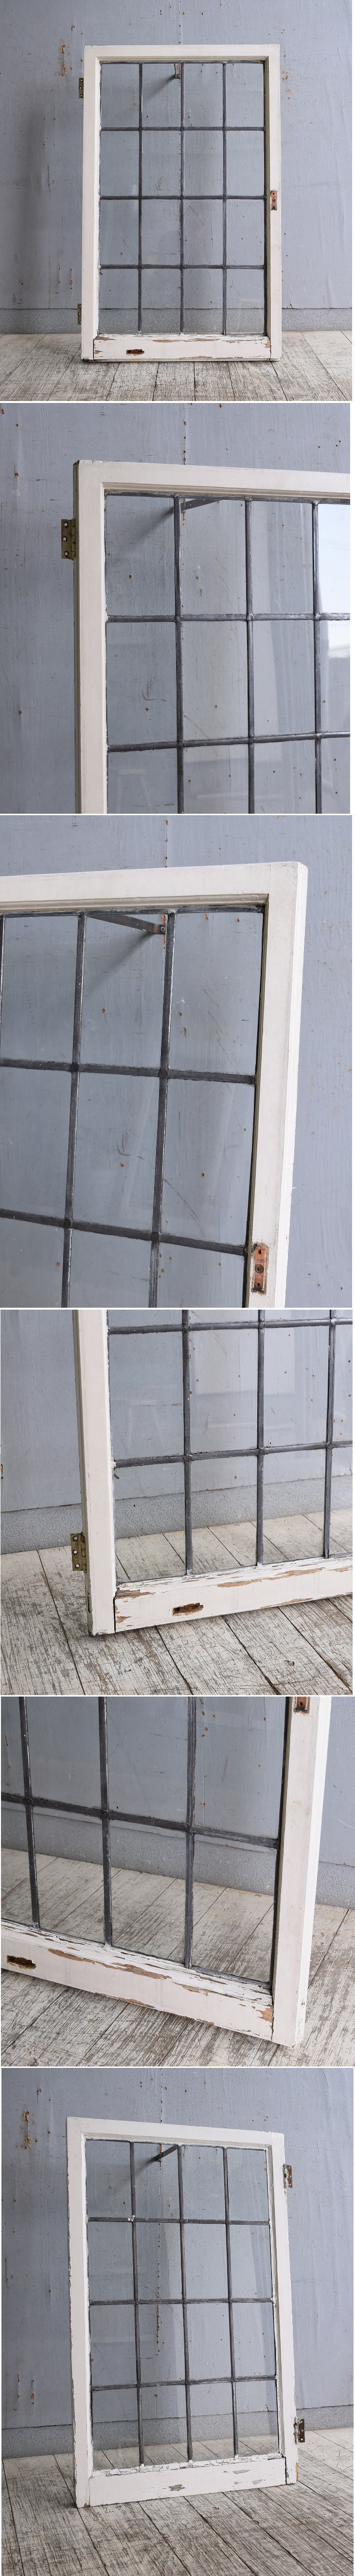 イギリス アンティーク 窓 無色透明 10143